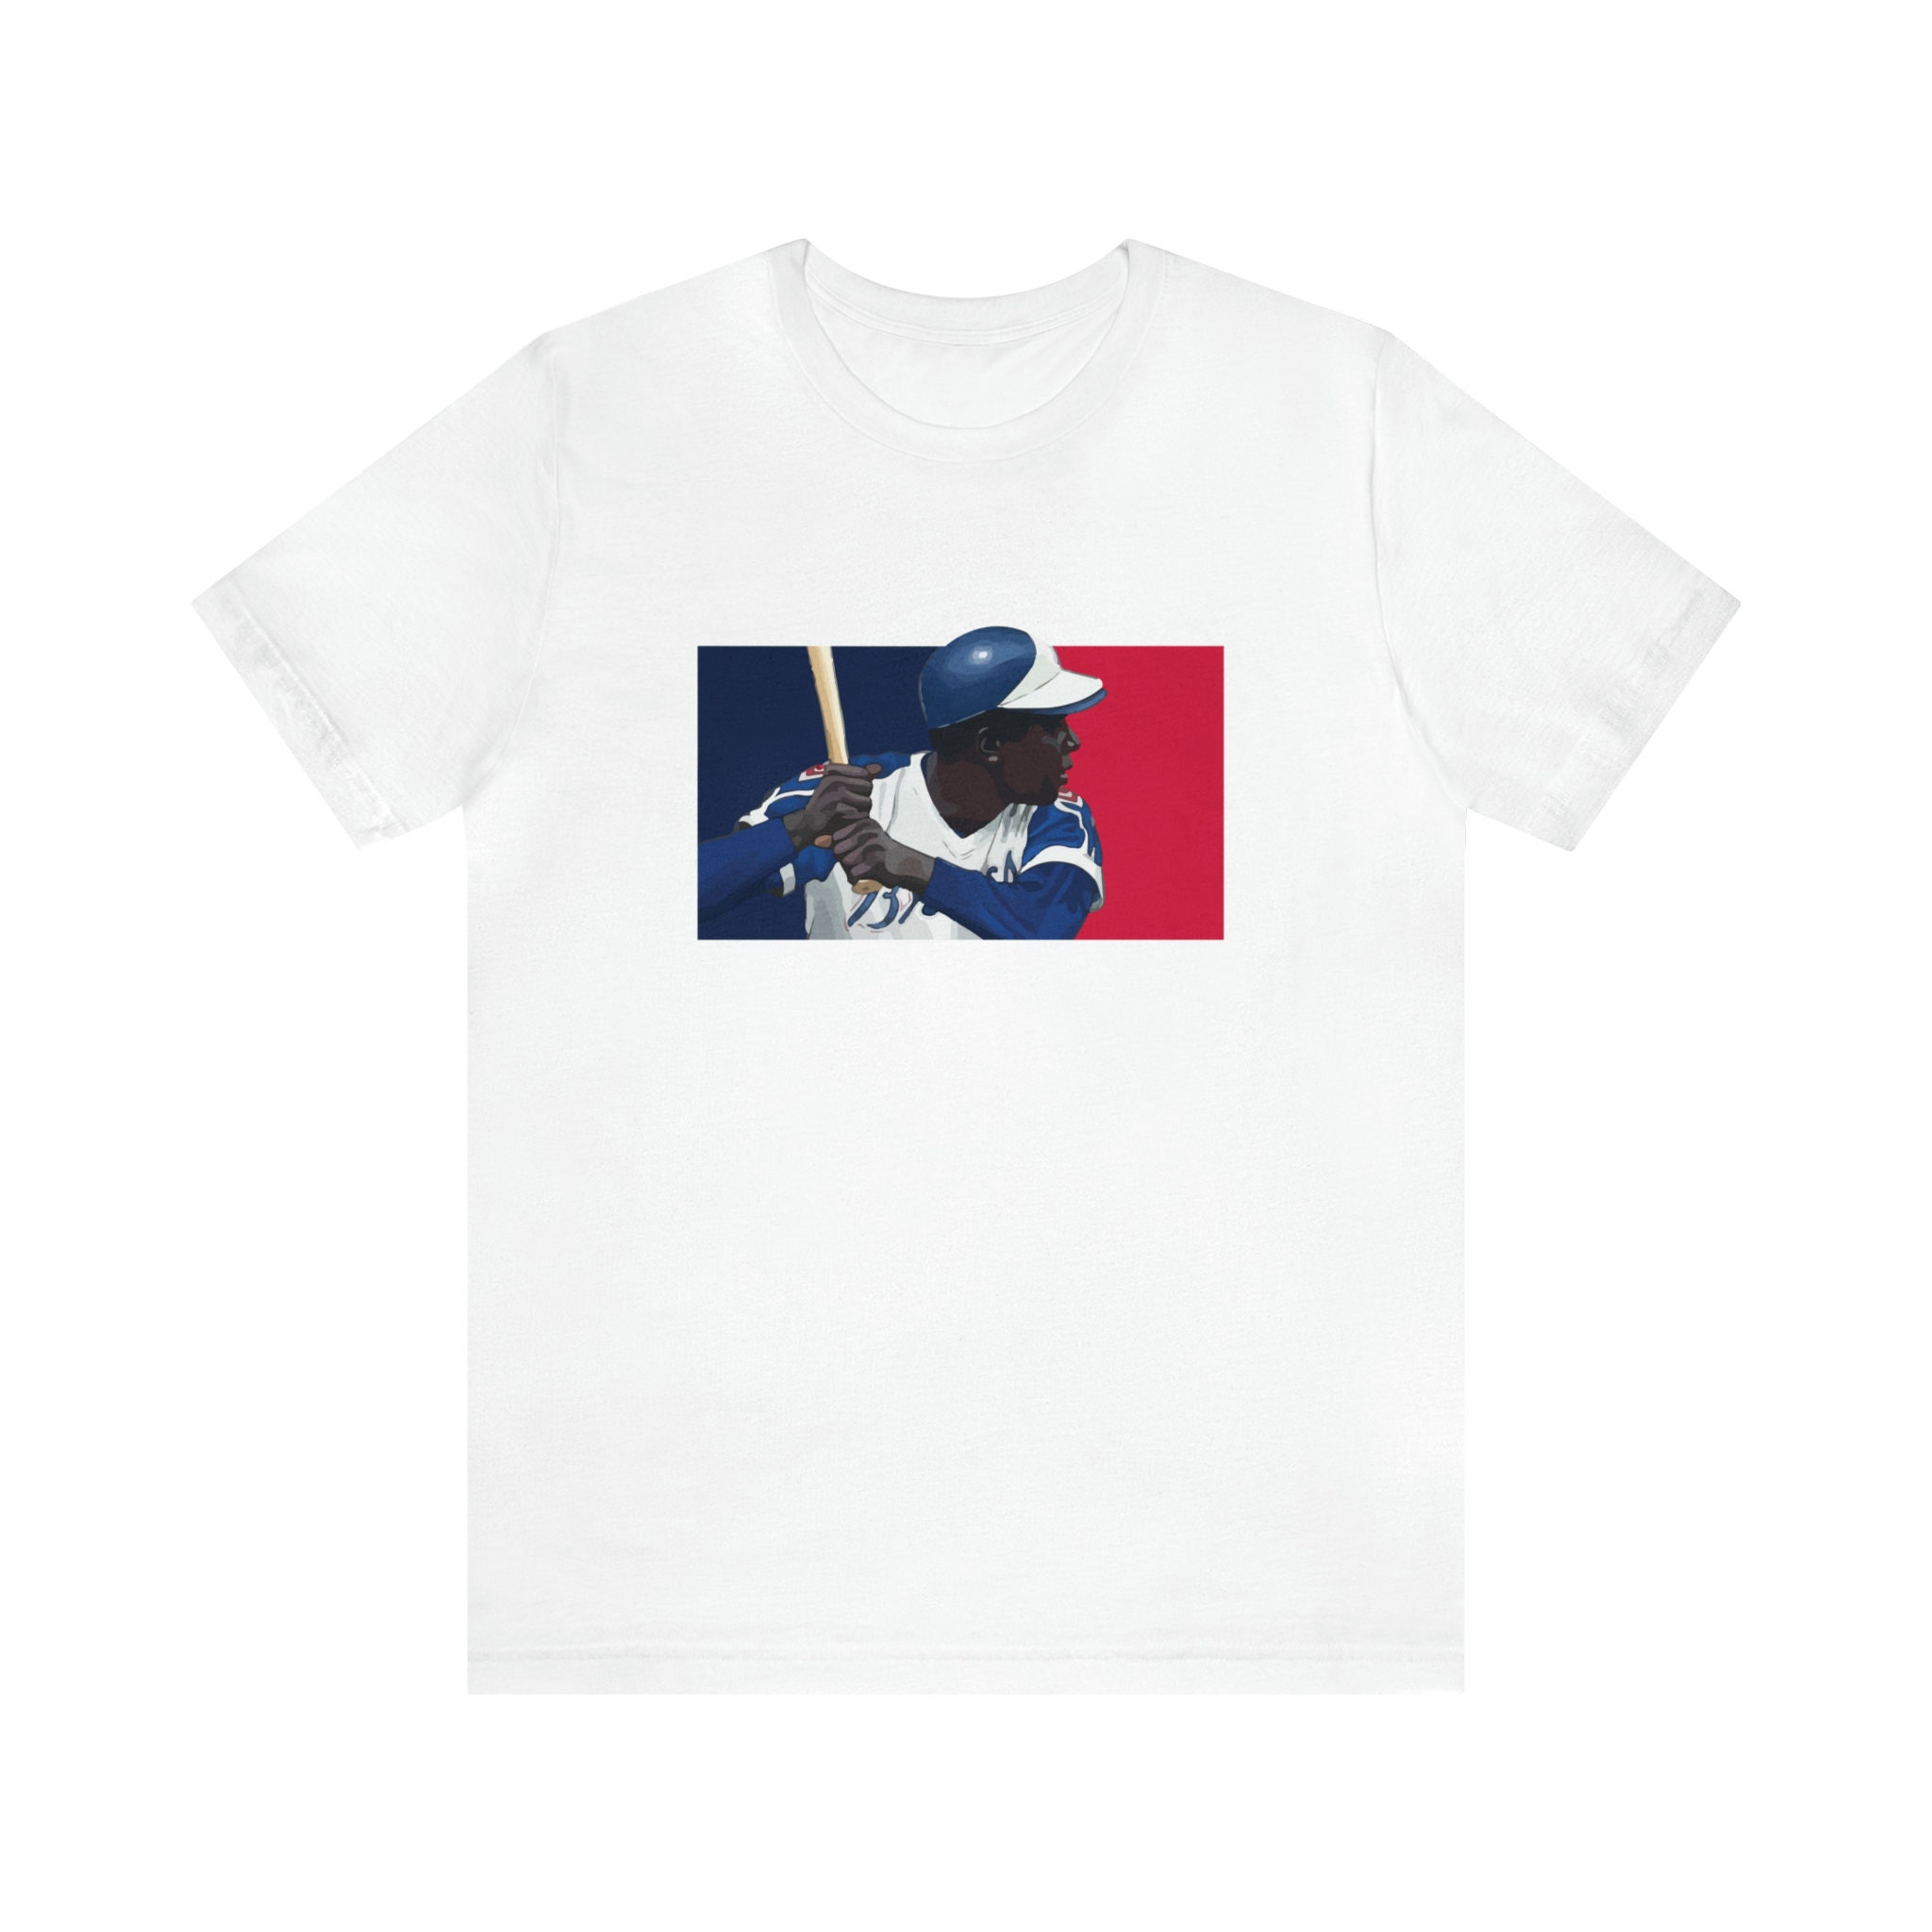 Hank Aaron Tribute Signature Unisex T-Shirt - Teeruto